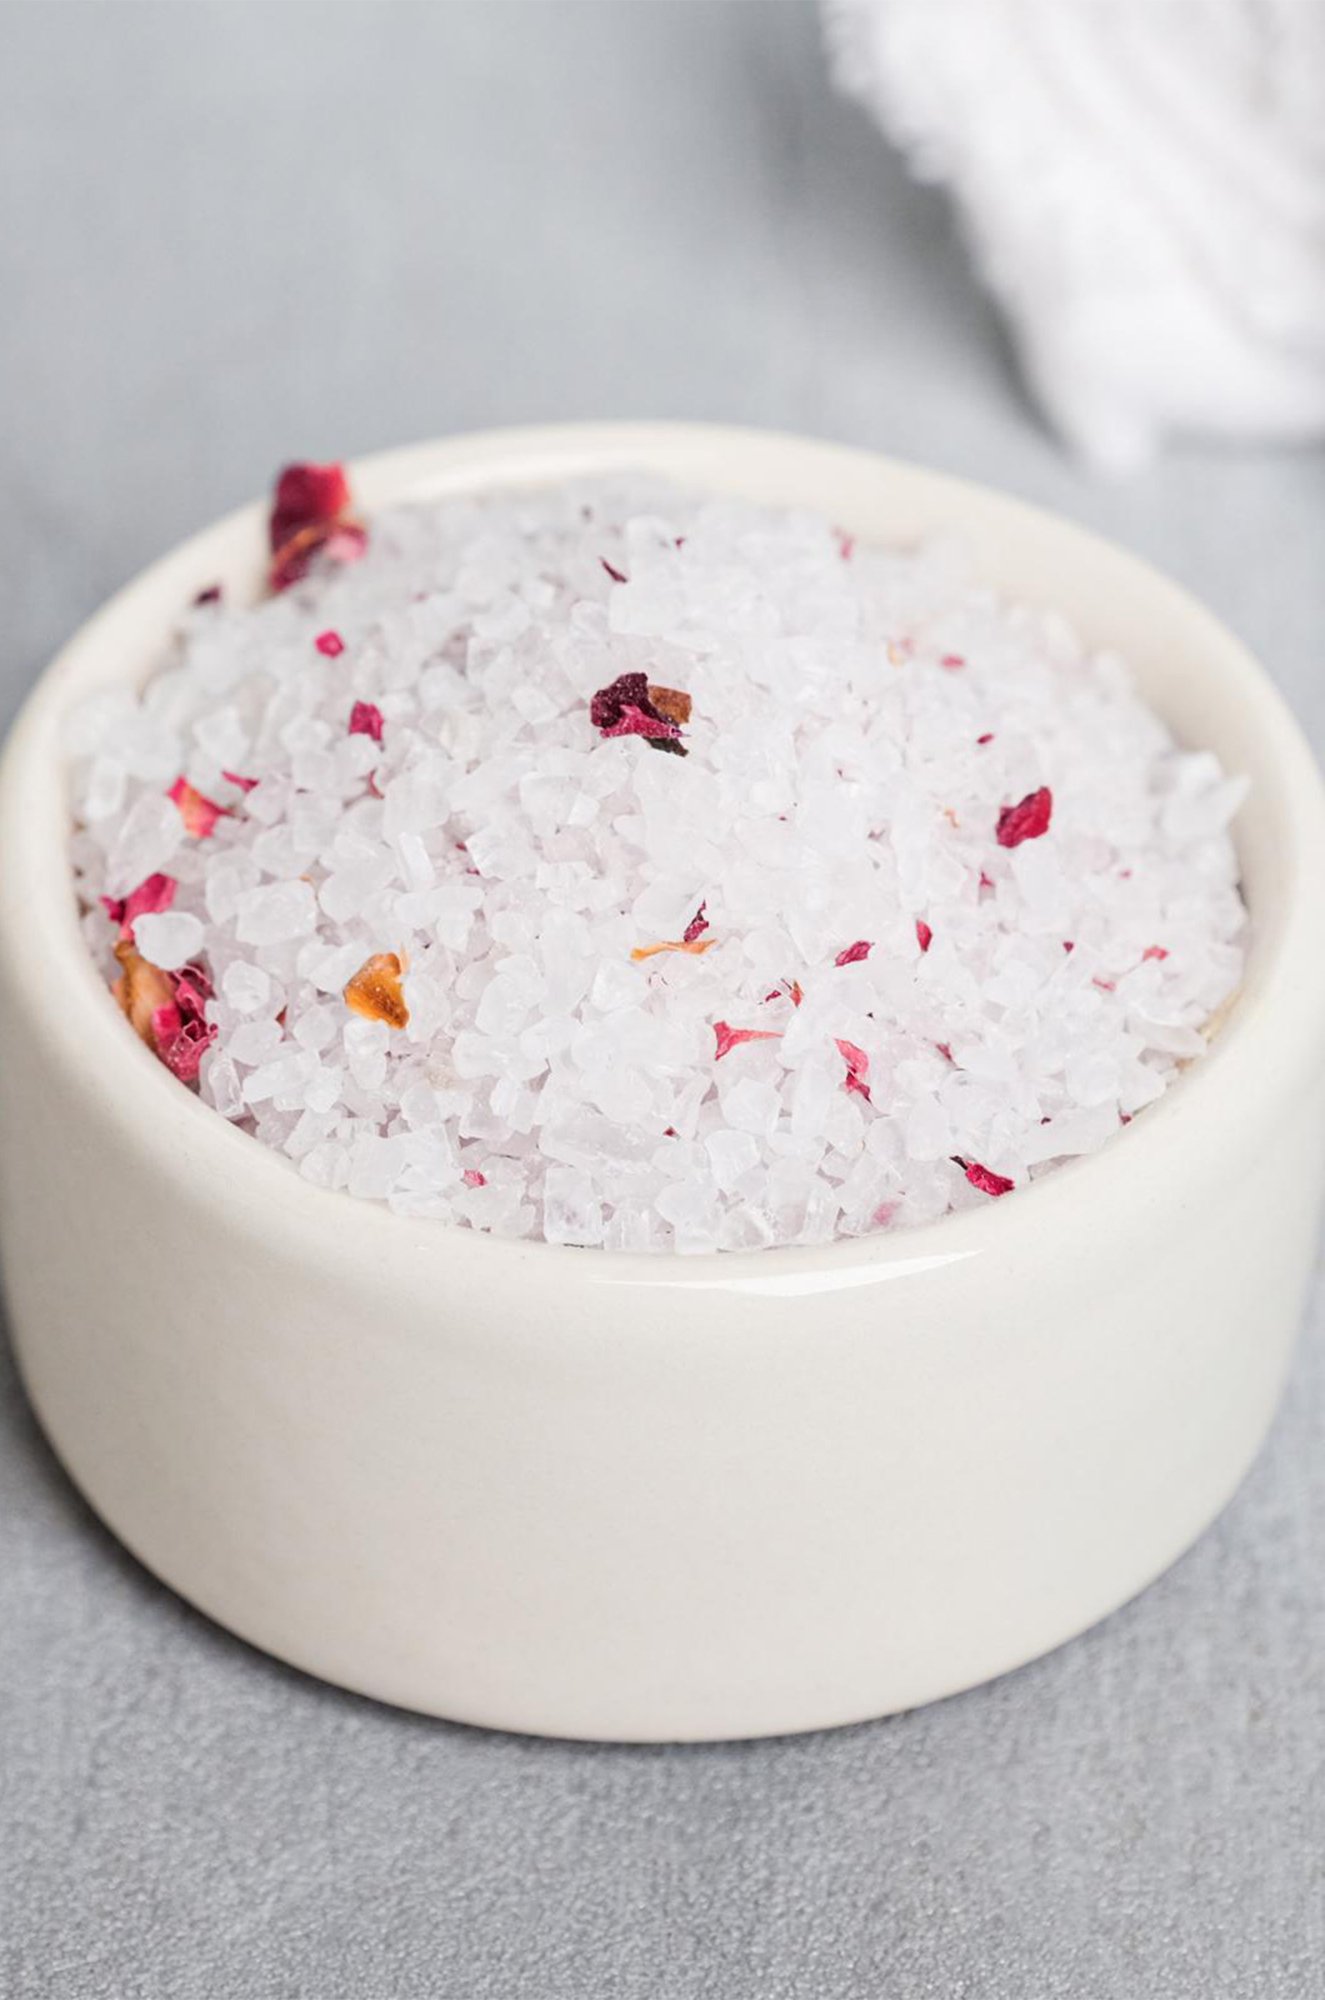 Расслабляющая соль для ванны с лепестками розы 370 гр Beauty Fox